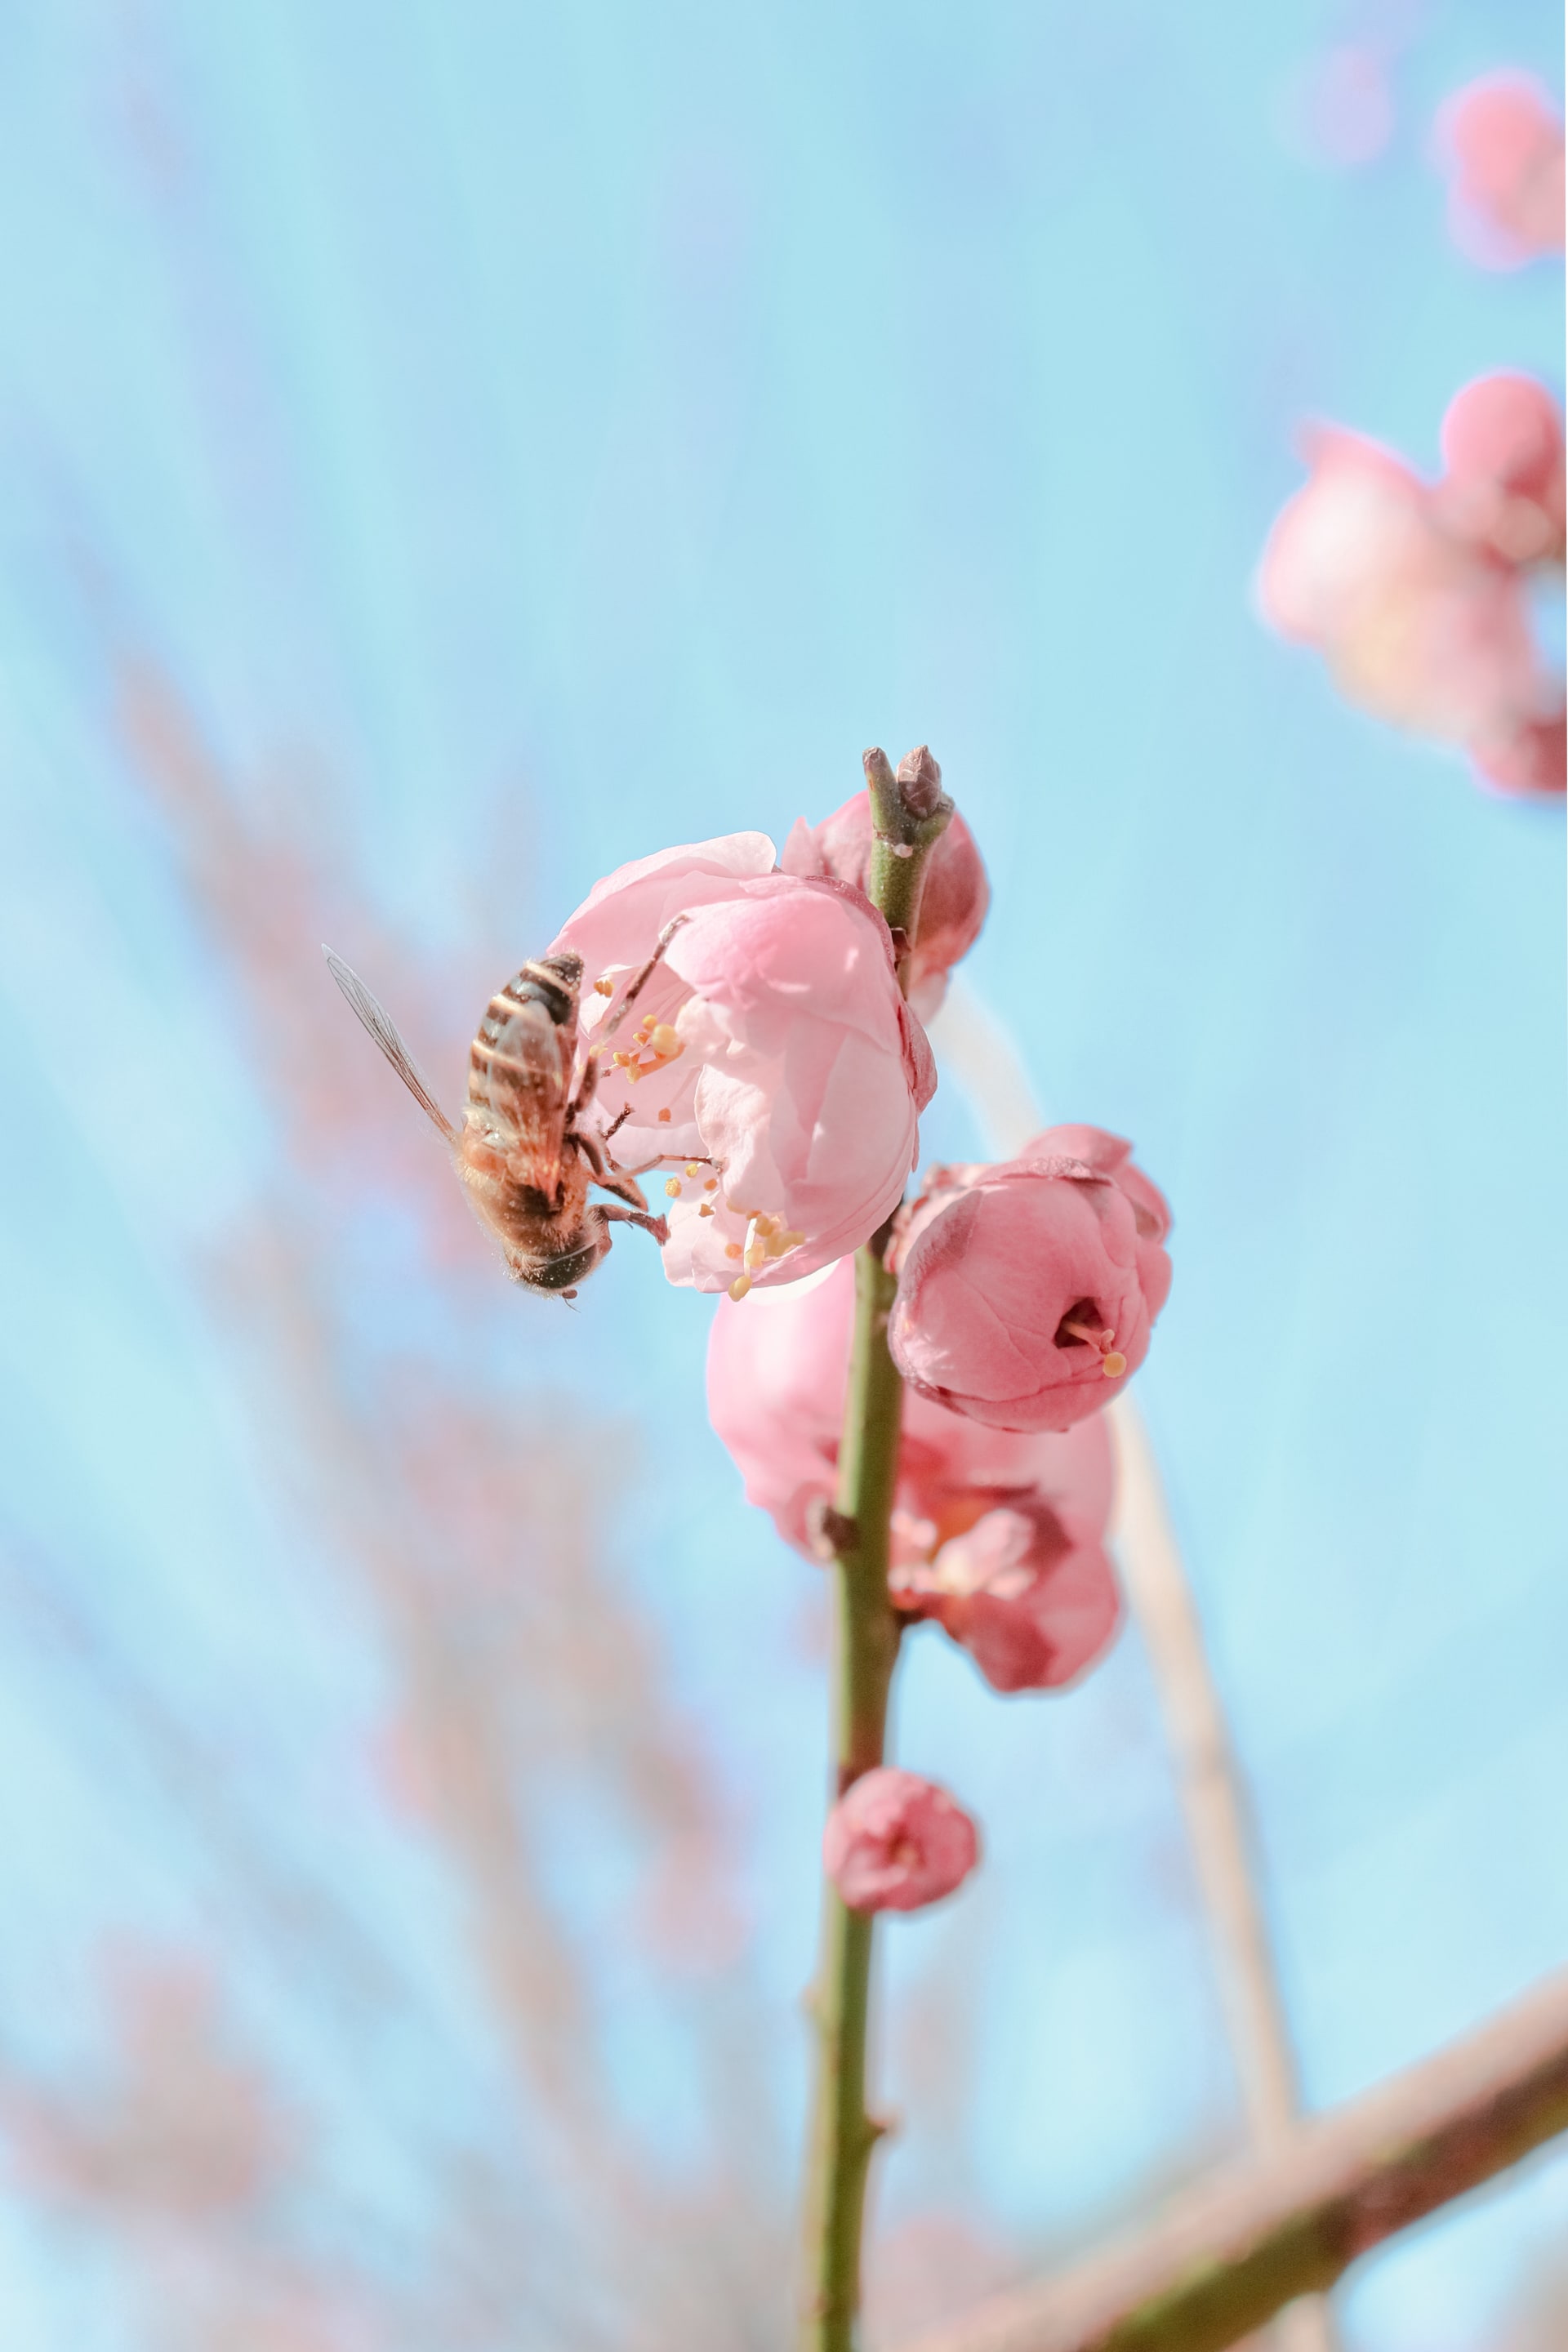 Včelek samotářek jsou stovky druhů